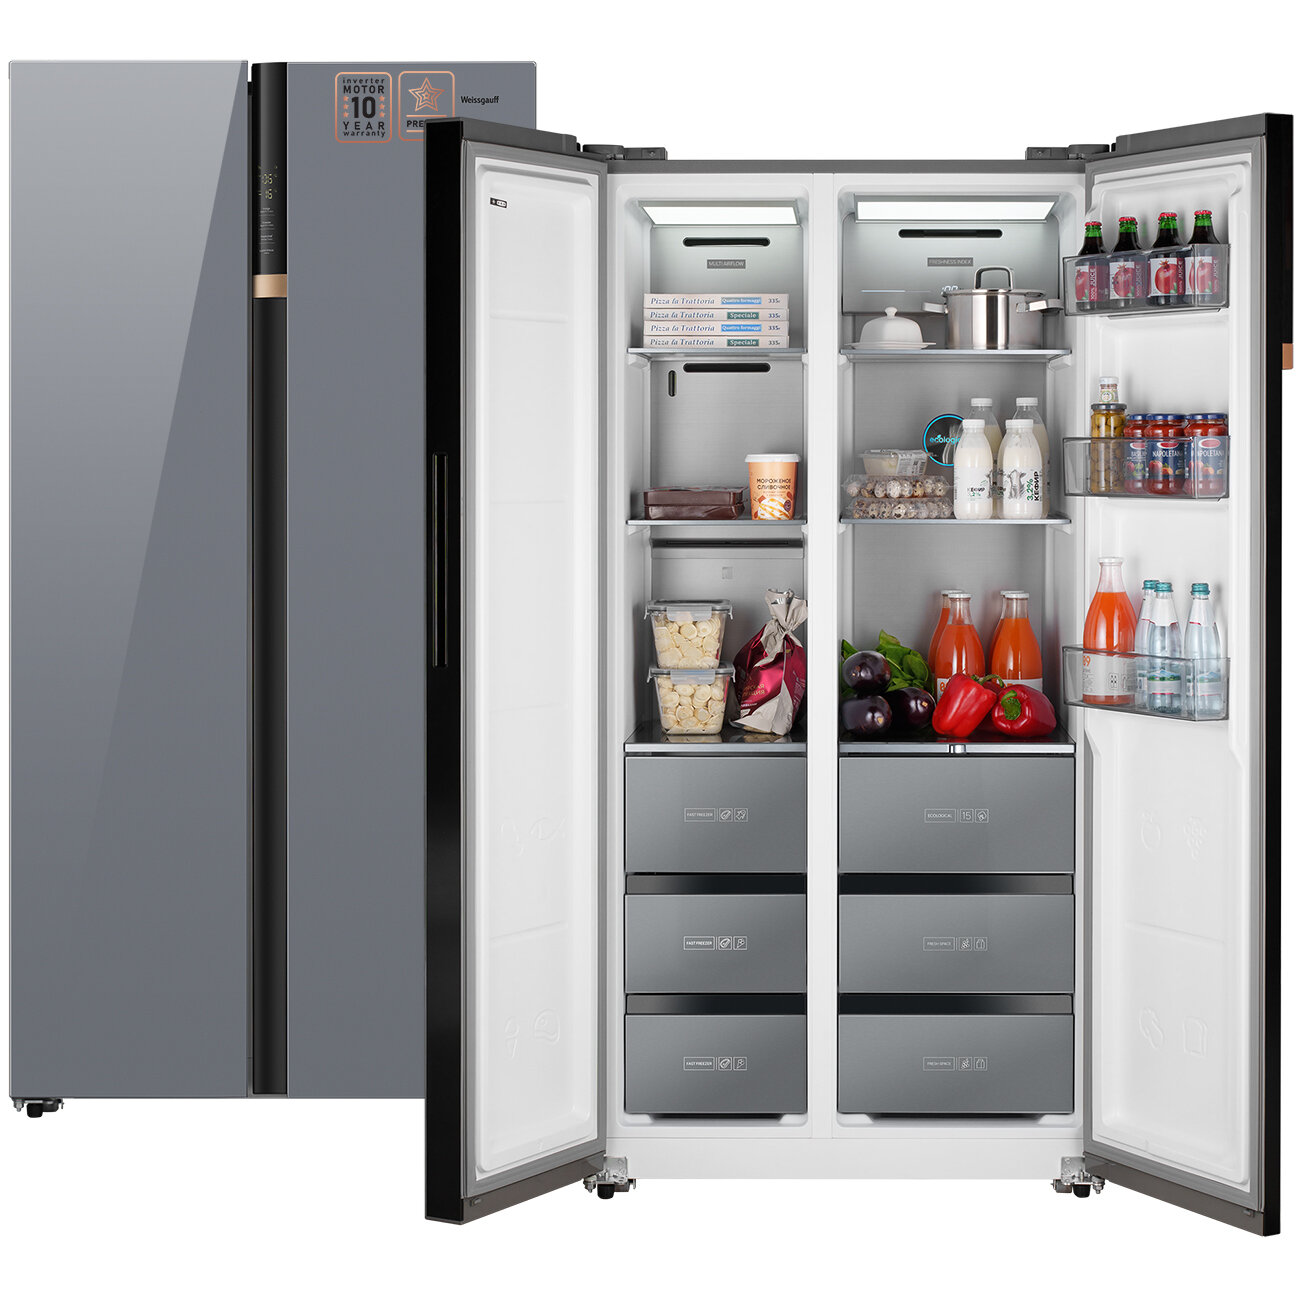 Отдельностоящий холодильник с инвертором Weissgauff Wsbs 590 NoFrost Inverter Premium Dark Grey Glass Side by Side двухдверный, 3 года гарантии, Замораживание 12 кг/сутки, Объём 584 л, Зона свежести, Сенсорное управление, Цифровой дисплей, Суперзаморозка